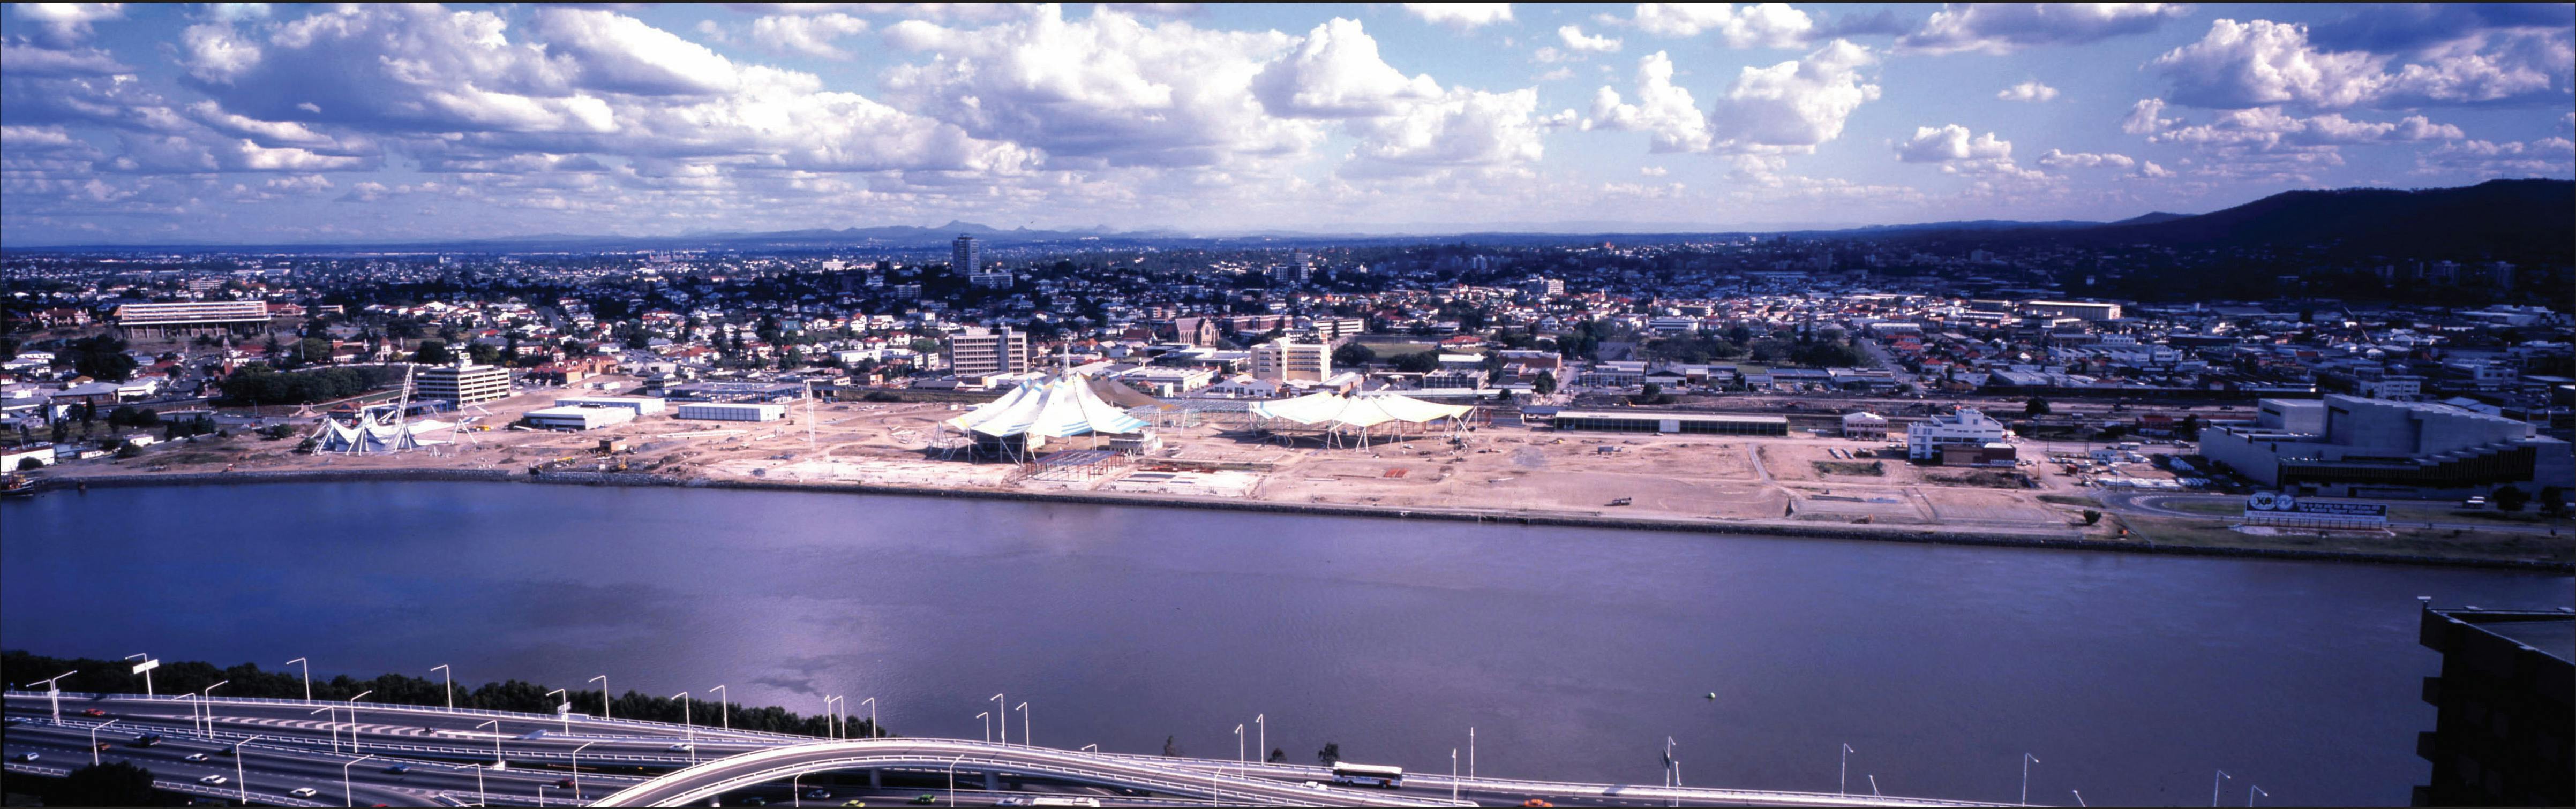 World Expo 88 - Panoramic site